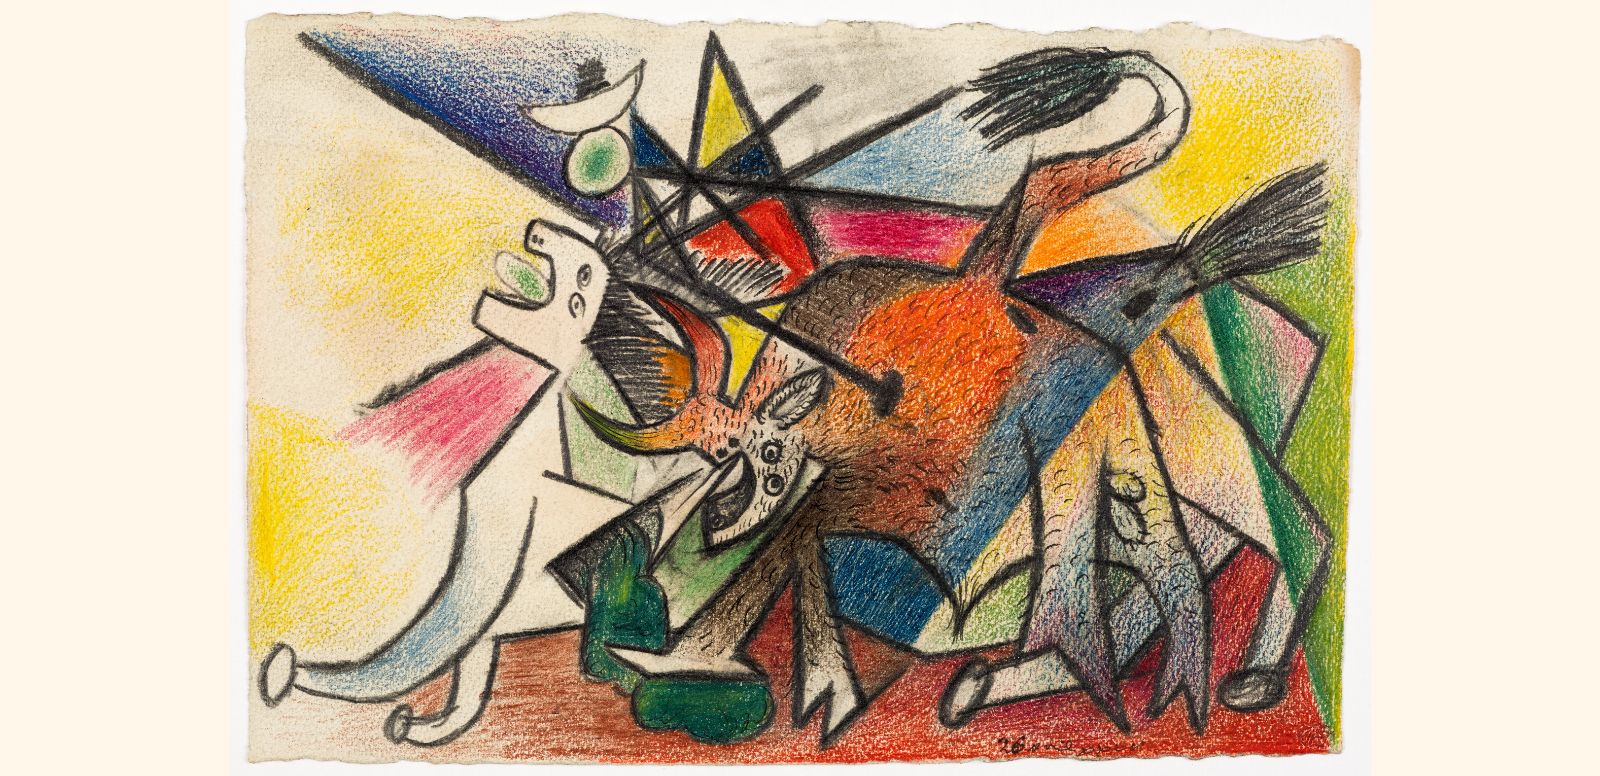 Pablo Picasso, "Corrida" 1935